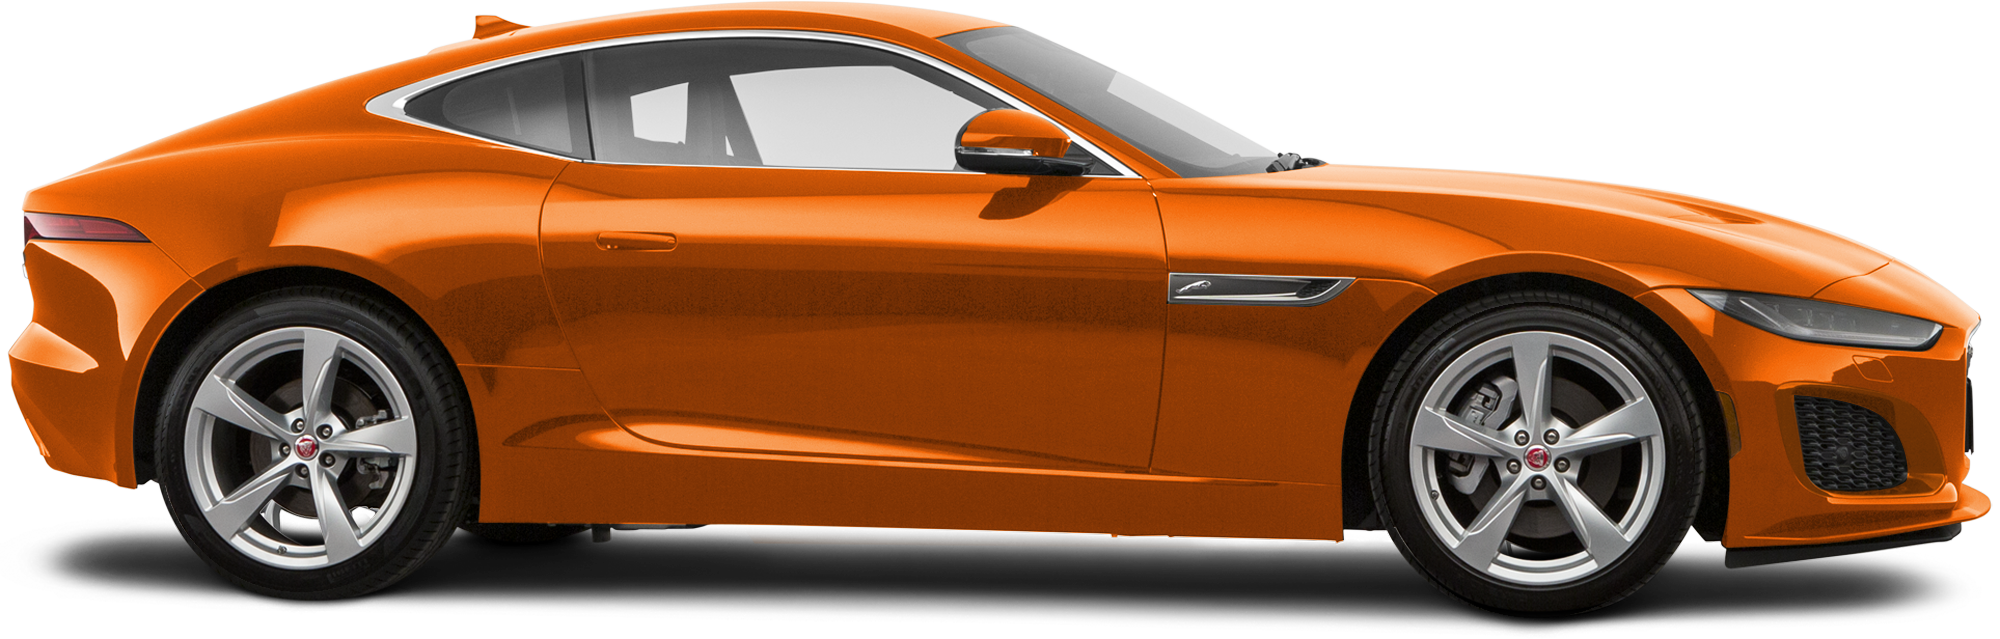 2022 Jaguar F-TYPE Coupe Digital ...